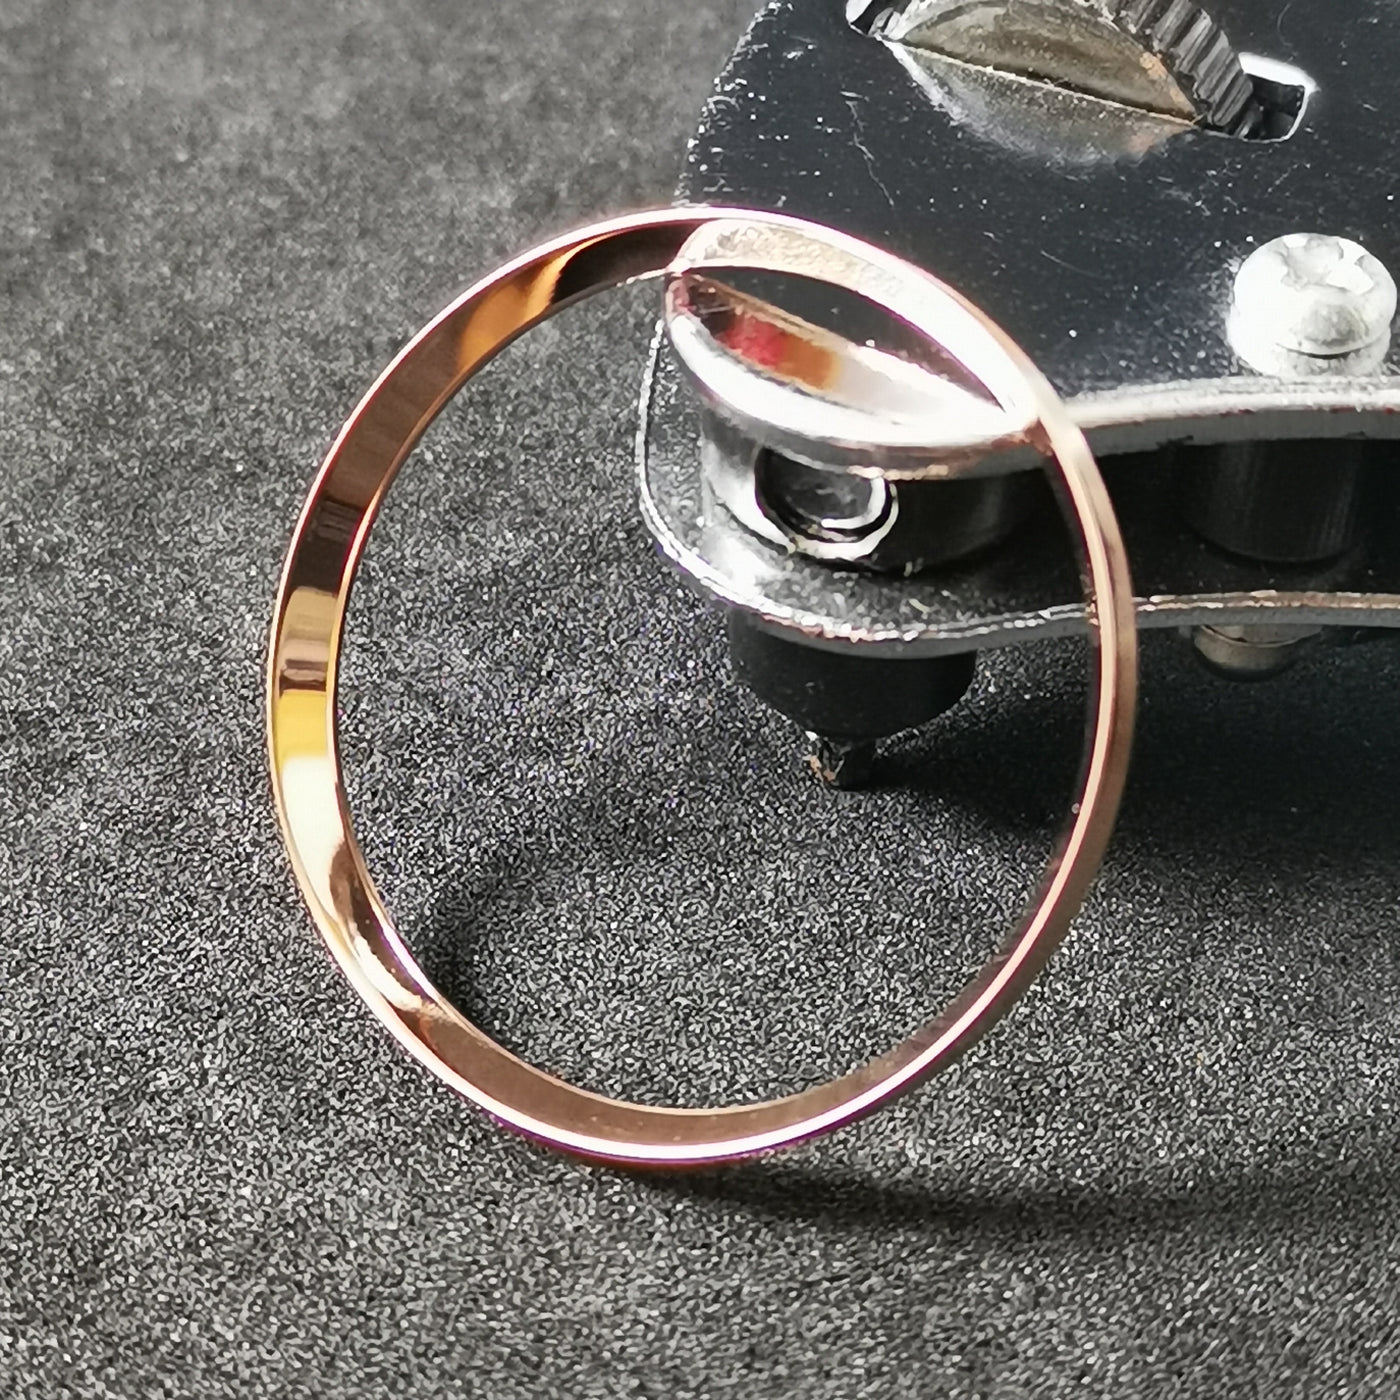 C0191 SKX007 Chapter Ring - Polished Rose Gold